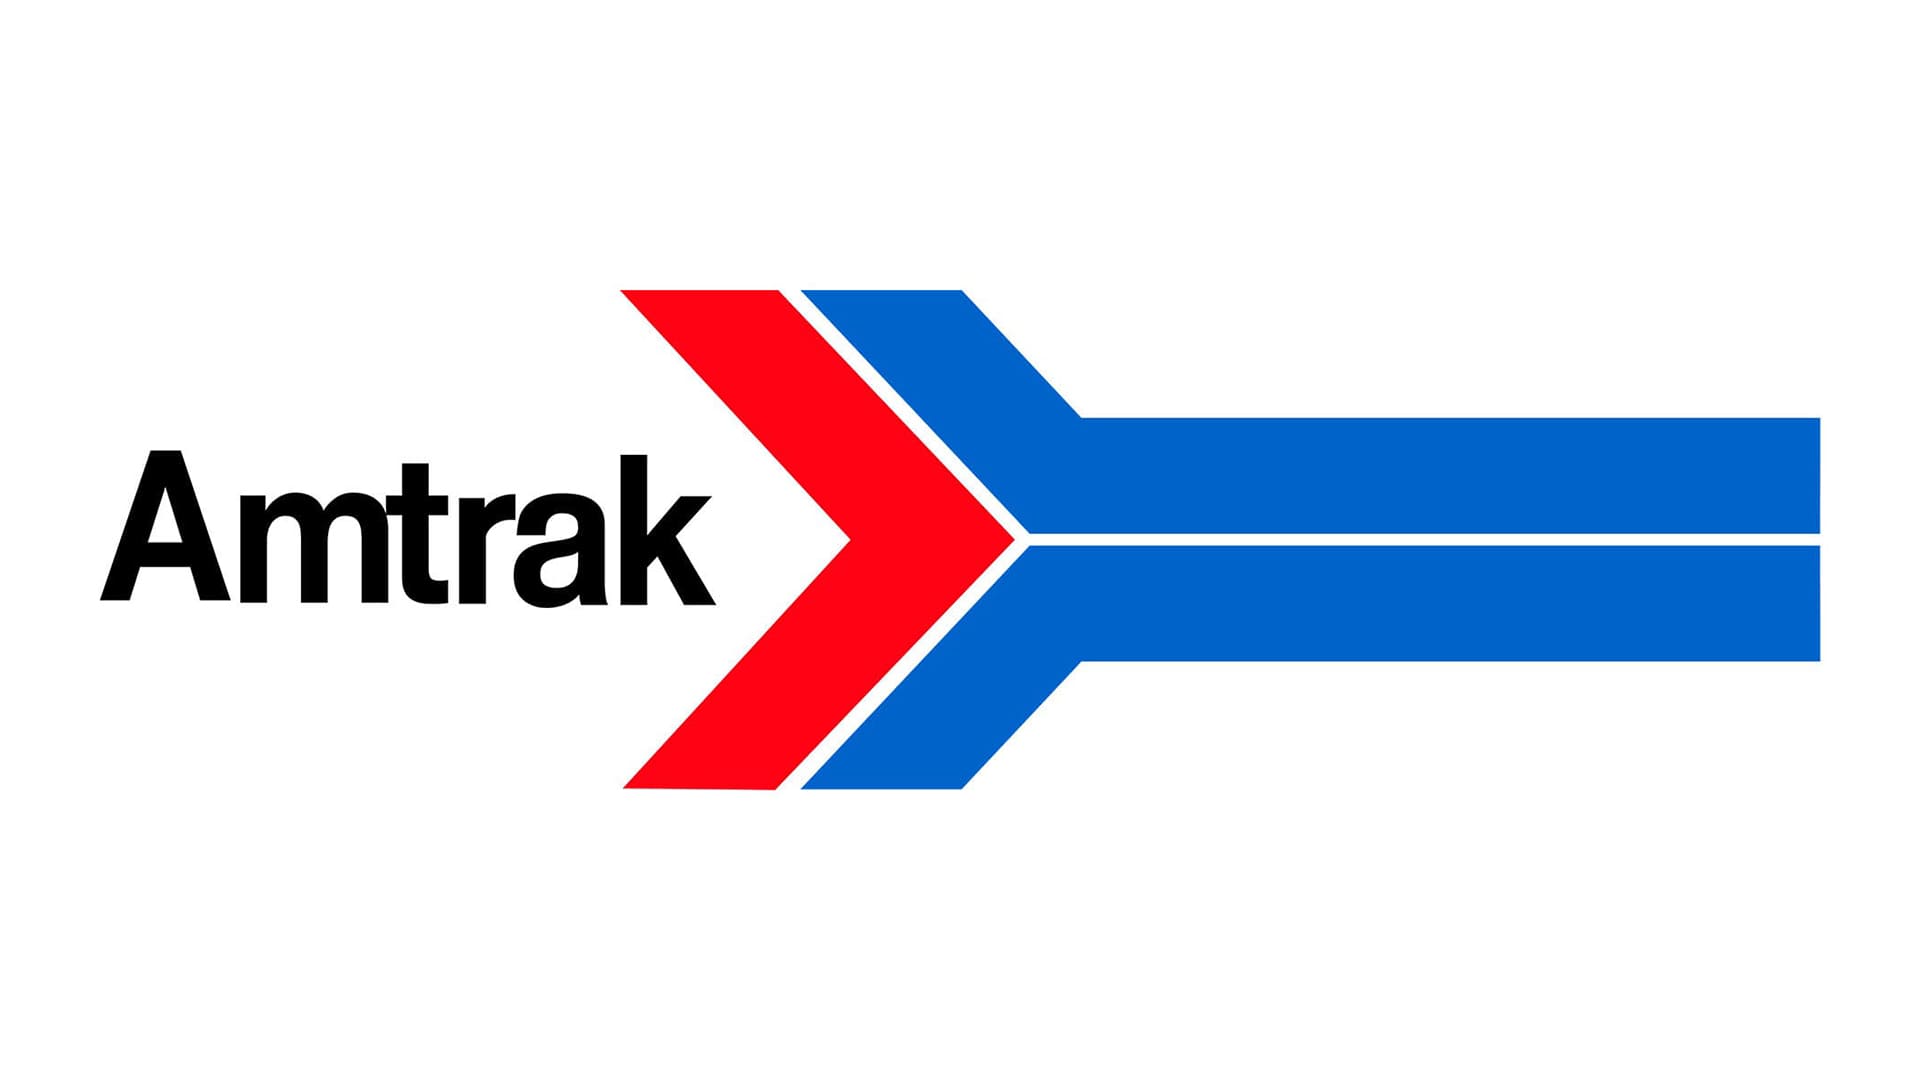 Amtrak Midwest Logo